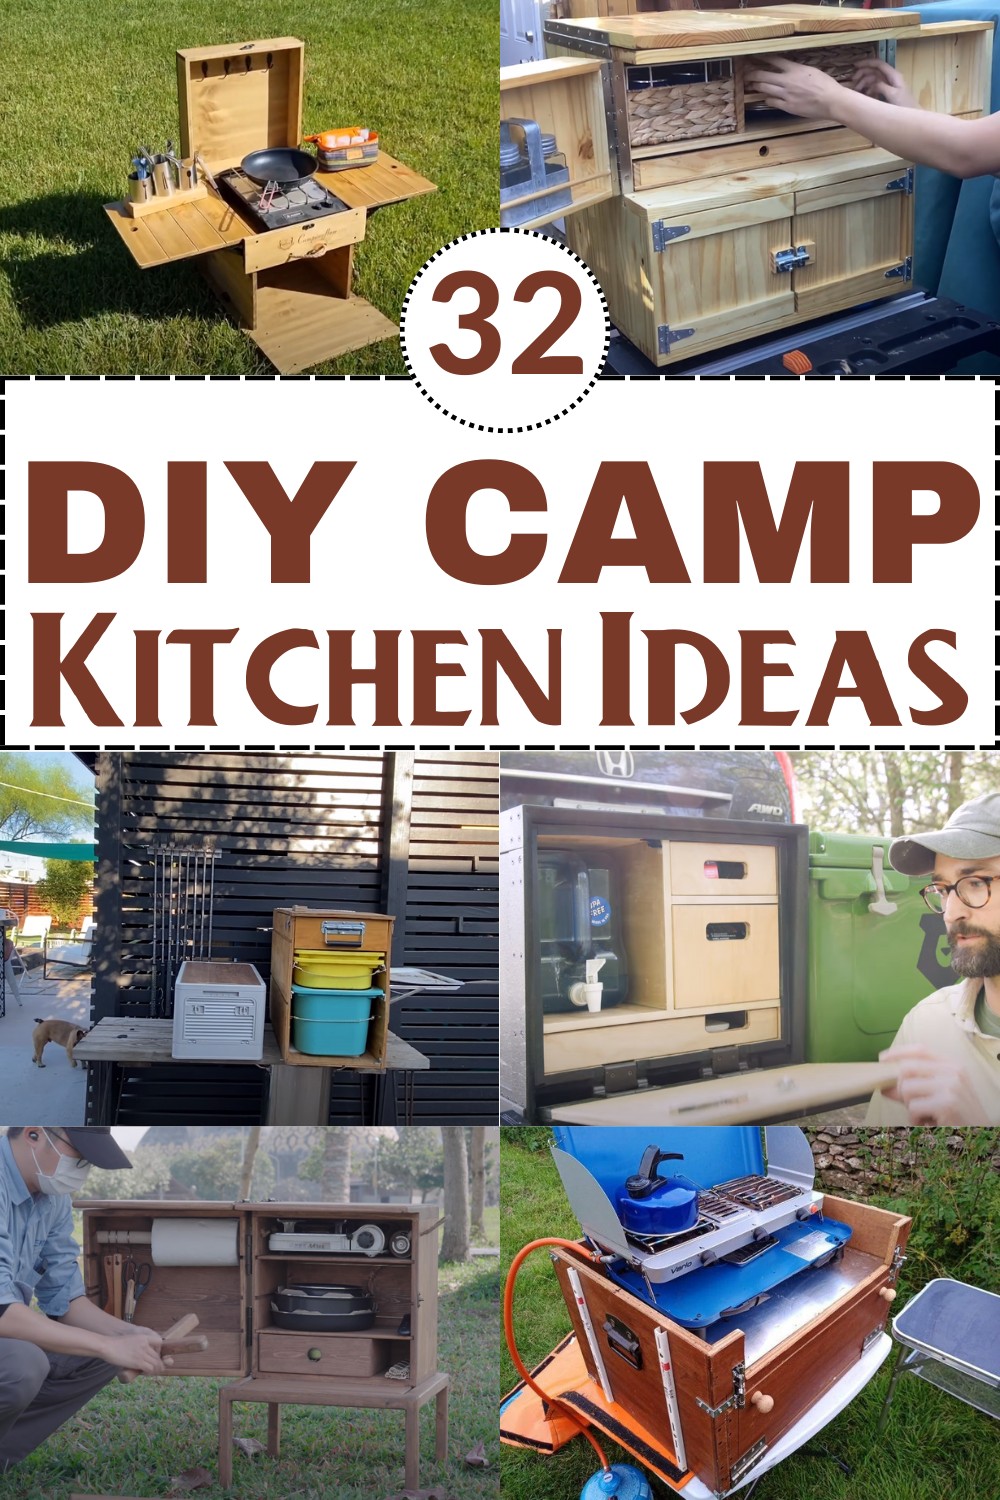 DIY Camp Kitchen Ideas